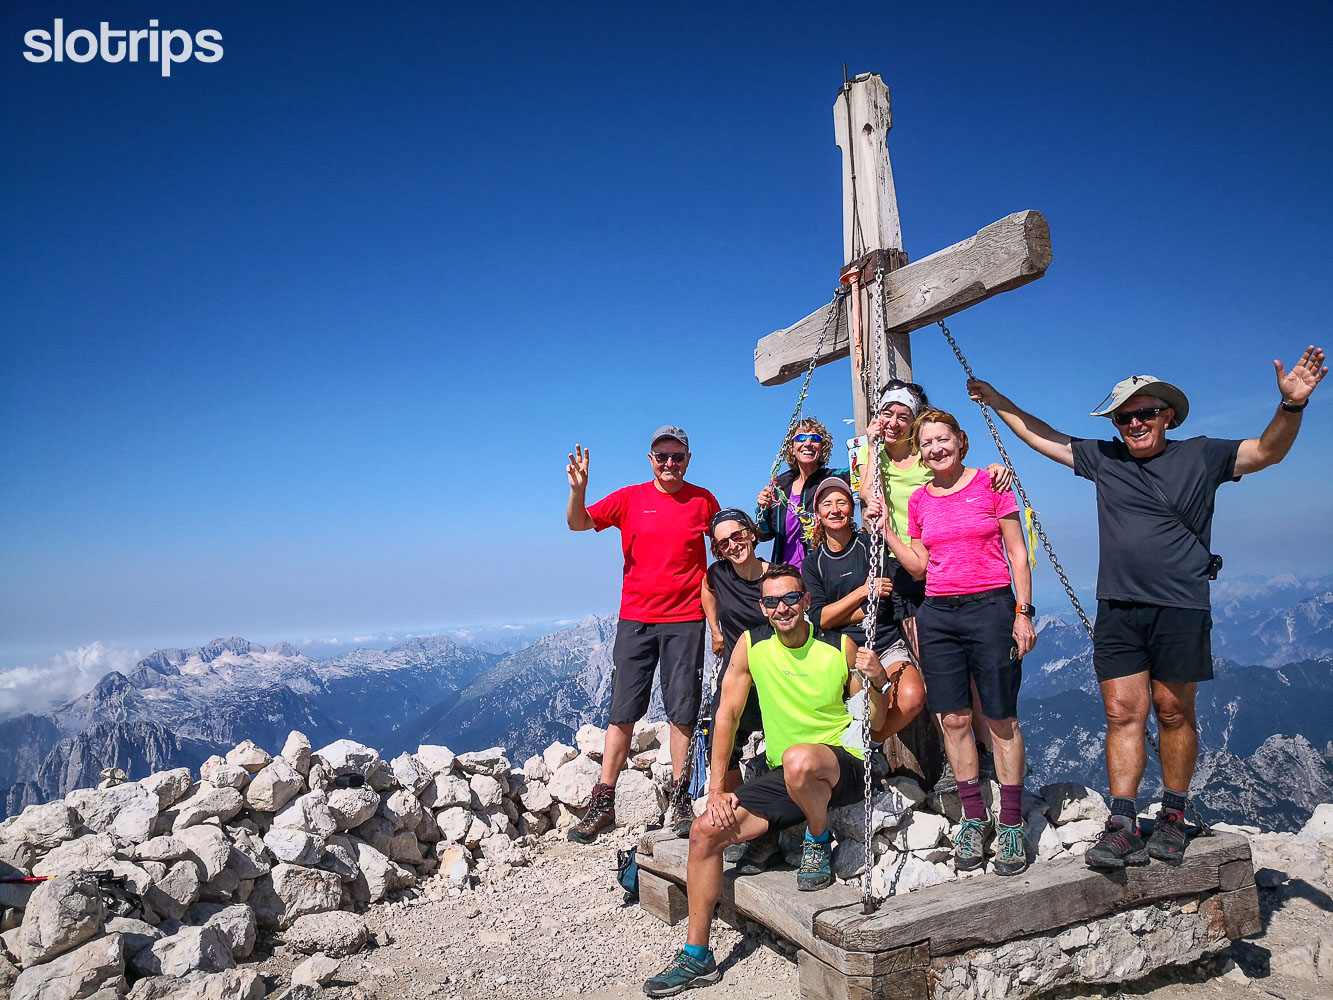 Hikers on the summit of Mt. Mangart, Slovenia